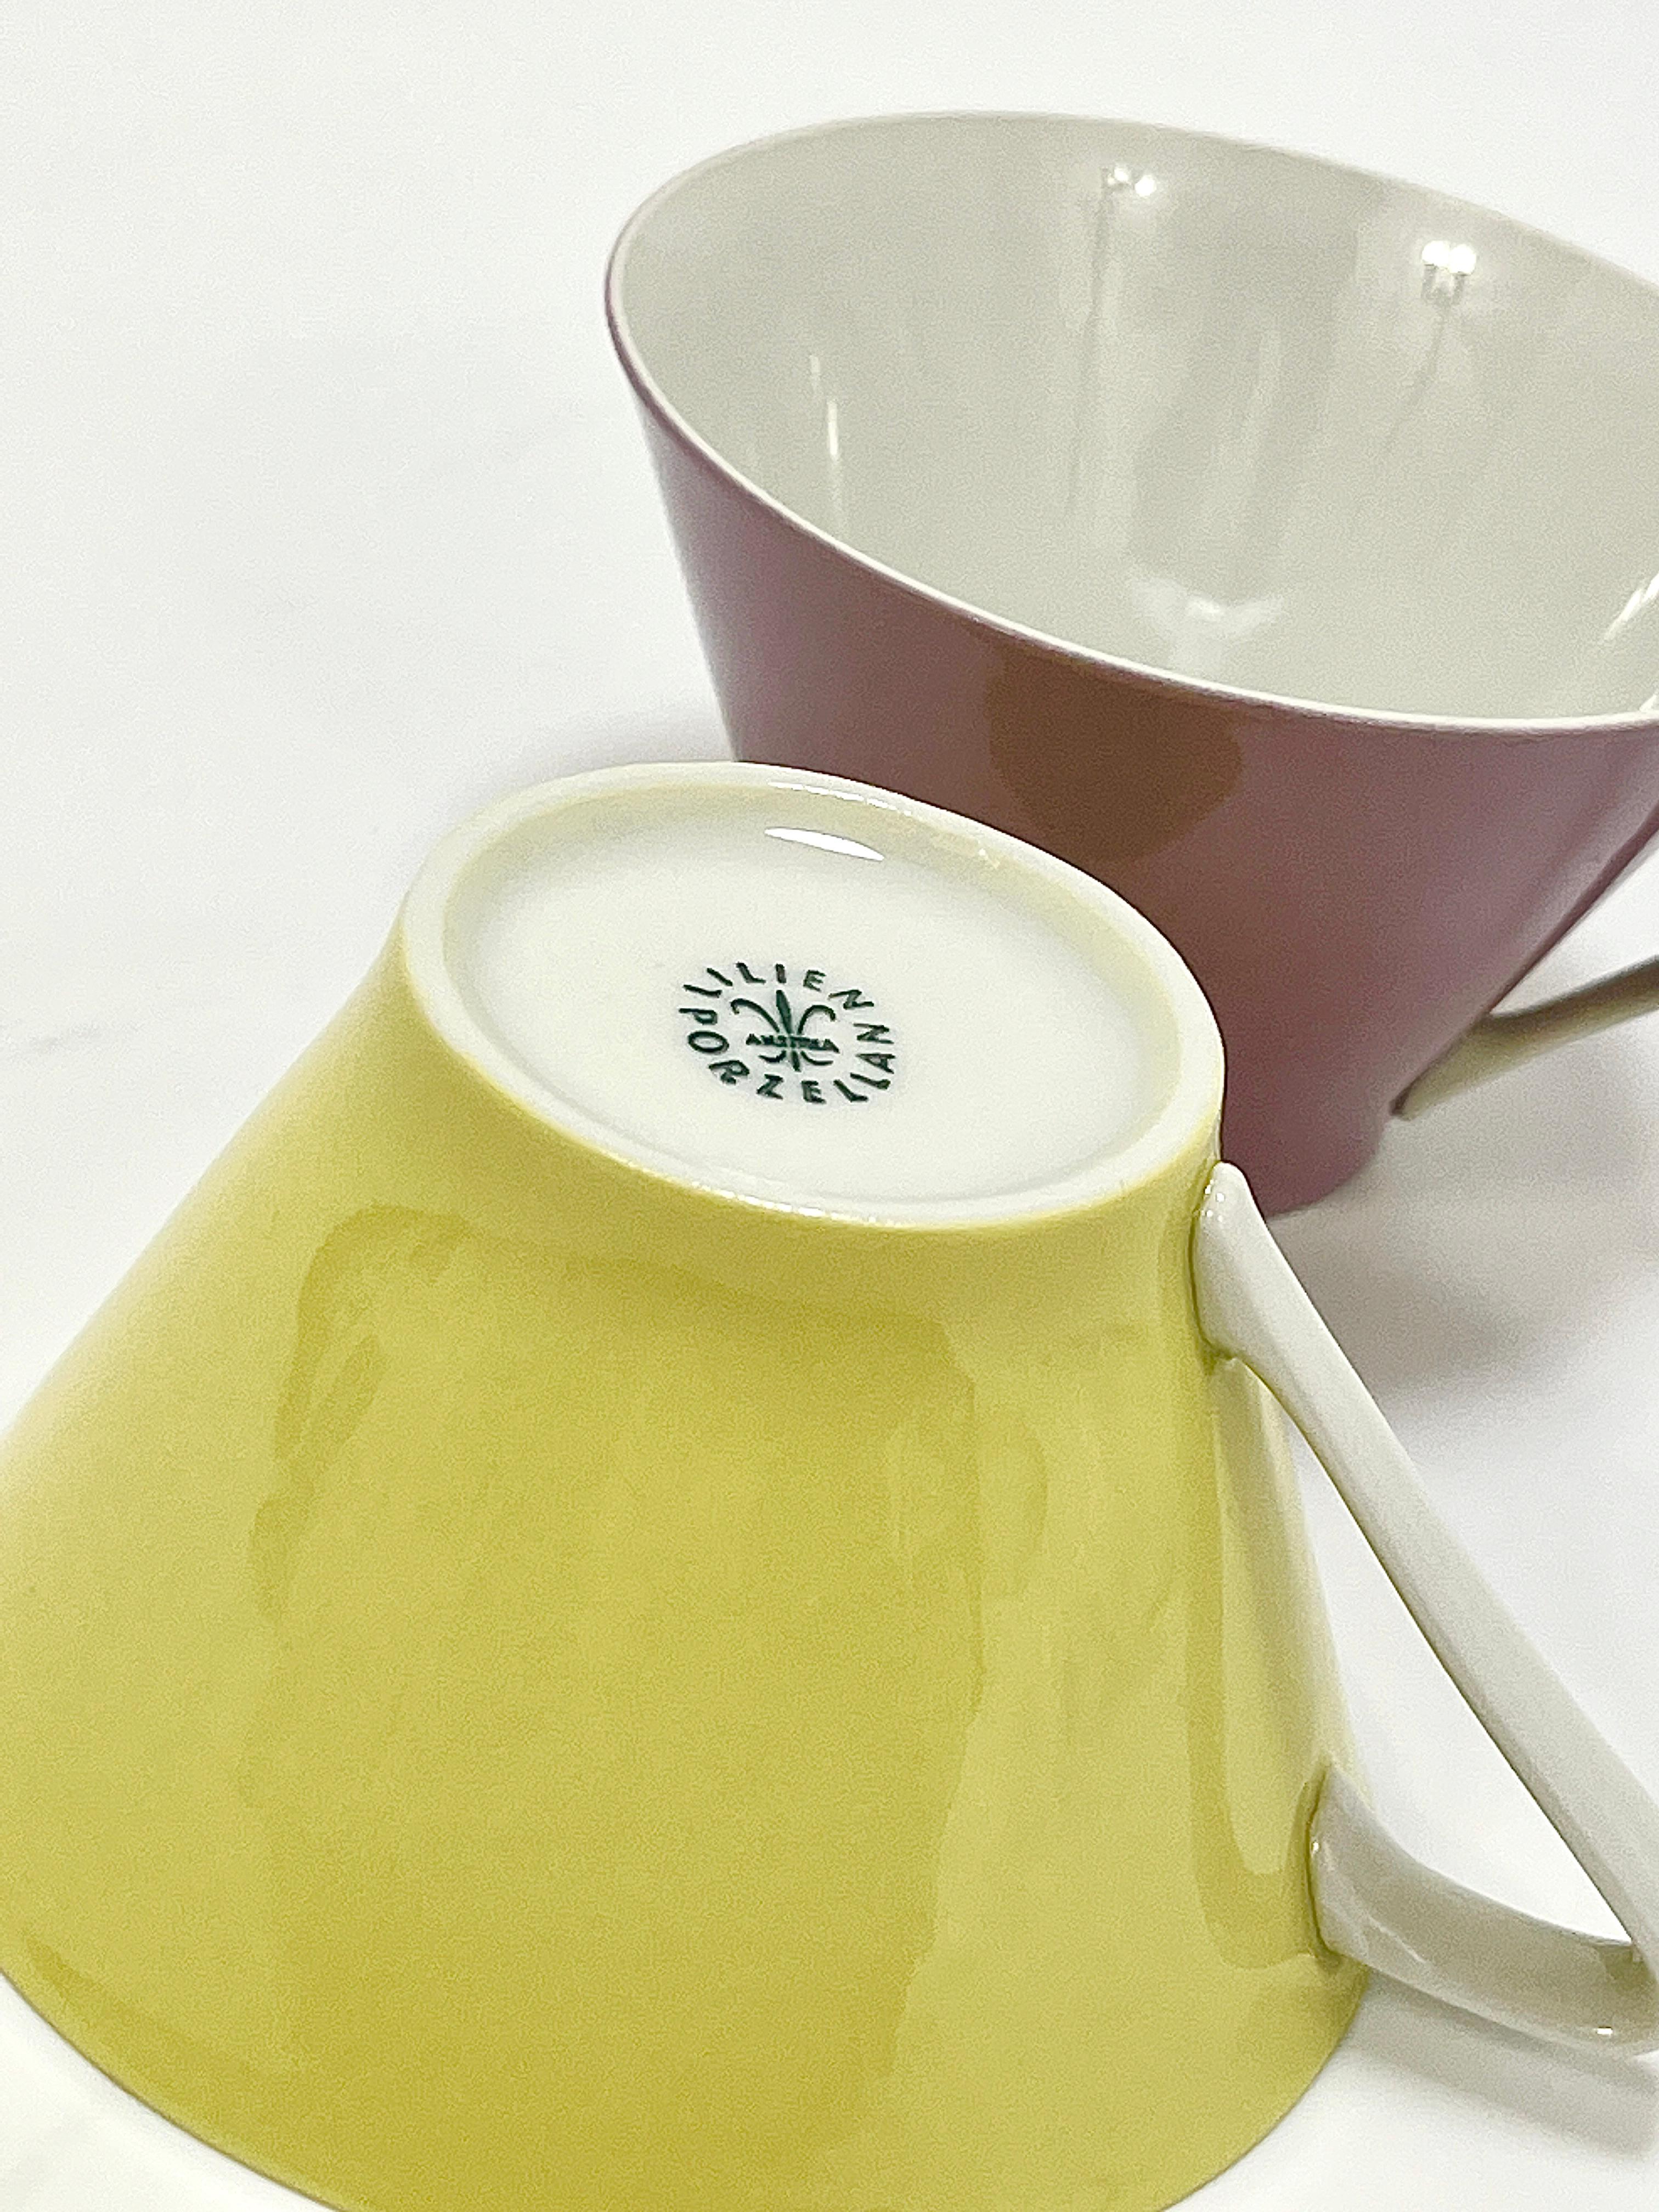 6 Midcentury Pastel Daisy Porcelain Coffee Cups, Lilien, Austria, 1950s For Sale 10